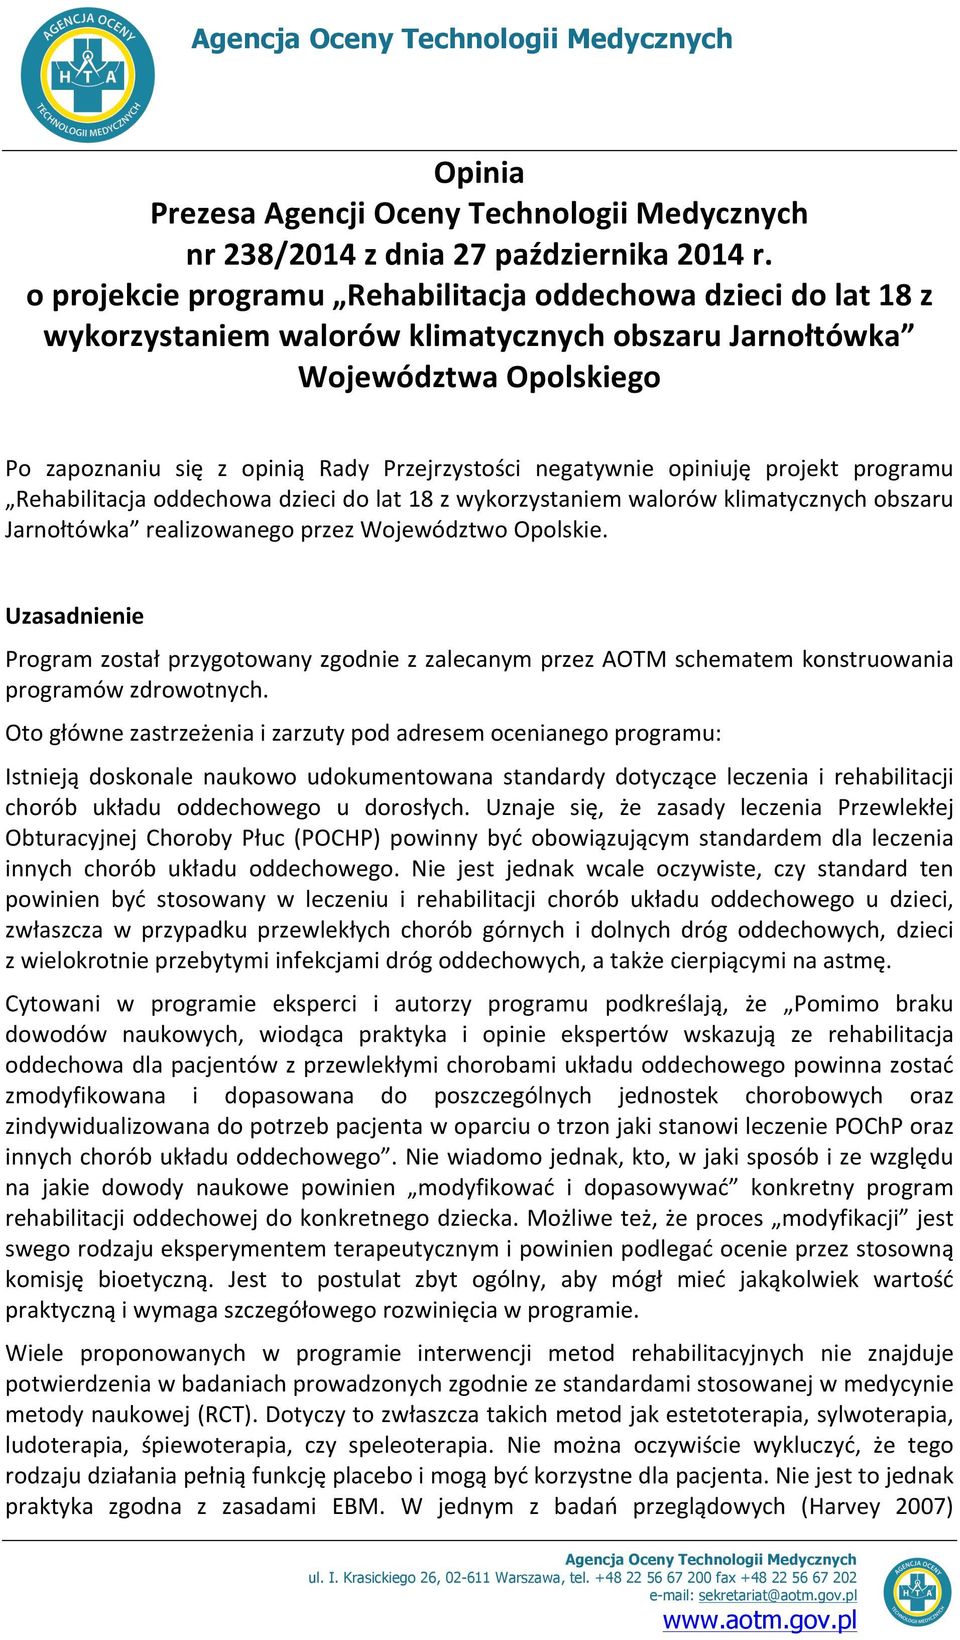 negatywnie opiniuję projekt programu Rehabilitacja oddechowa dzieci do lat 18 z wykorzystaniem walorów klimatycznych obszaru Jarnołtówka realizowanego przez Województwo Opolskie.